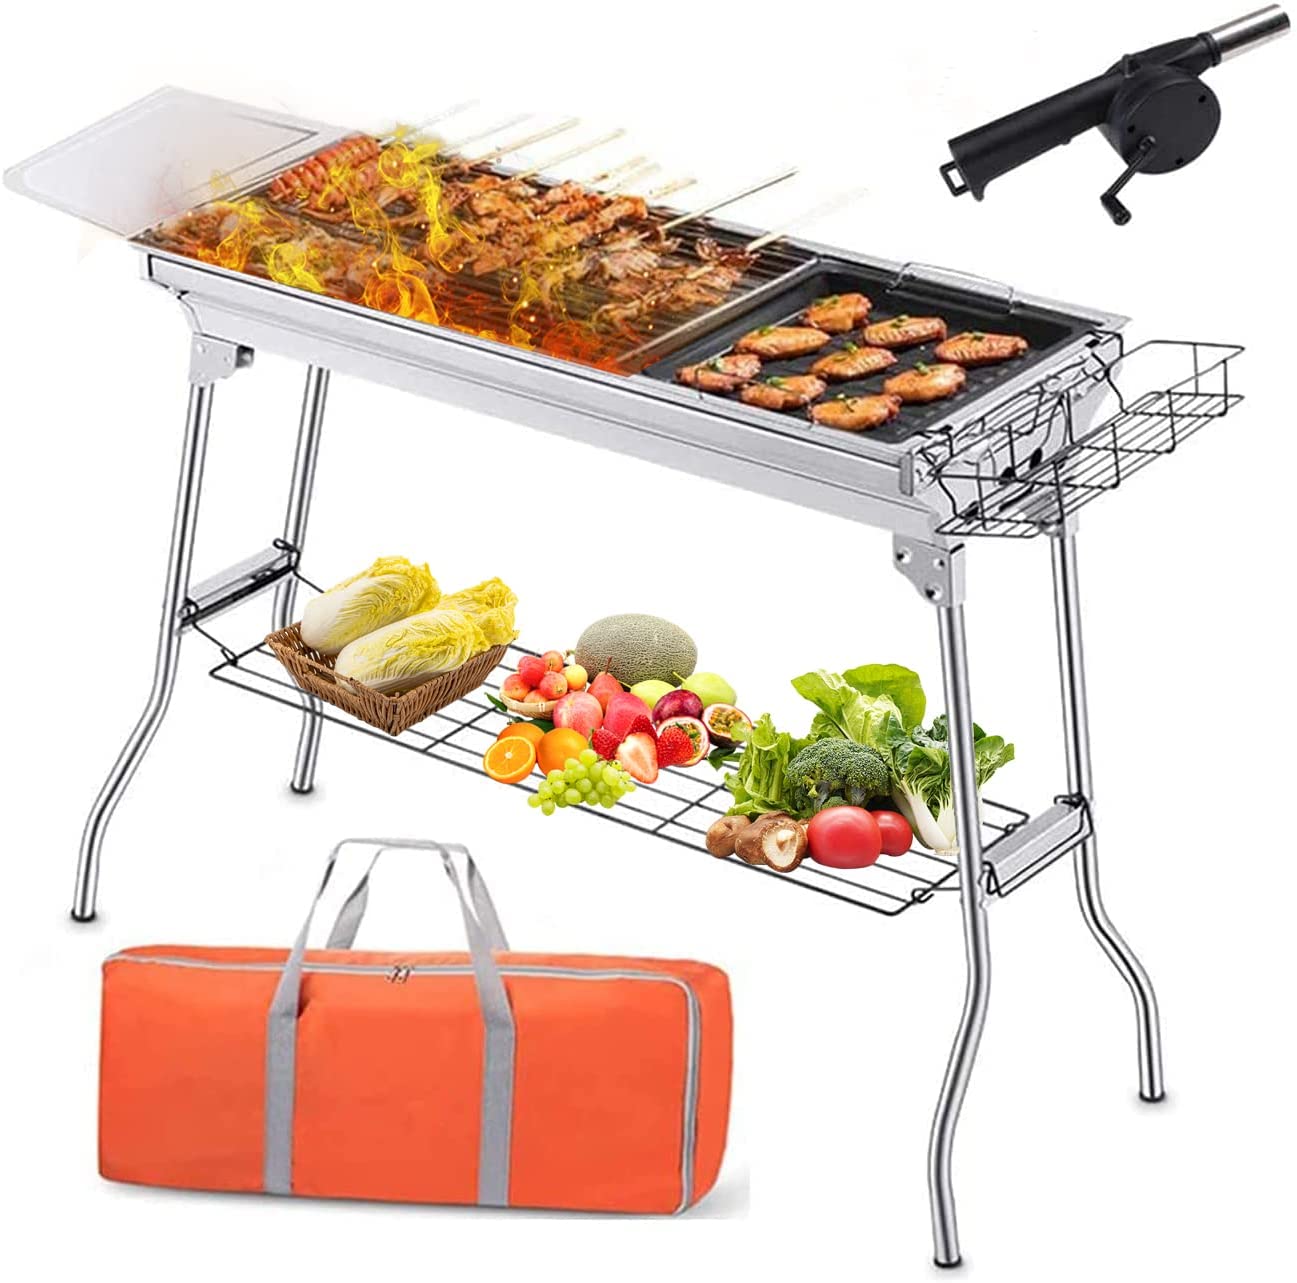 Melhor grelhador a carvão yakitori portátil grande para atividades ao ar livre e camping: Fanousy Grill BBQ